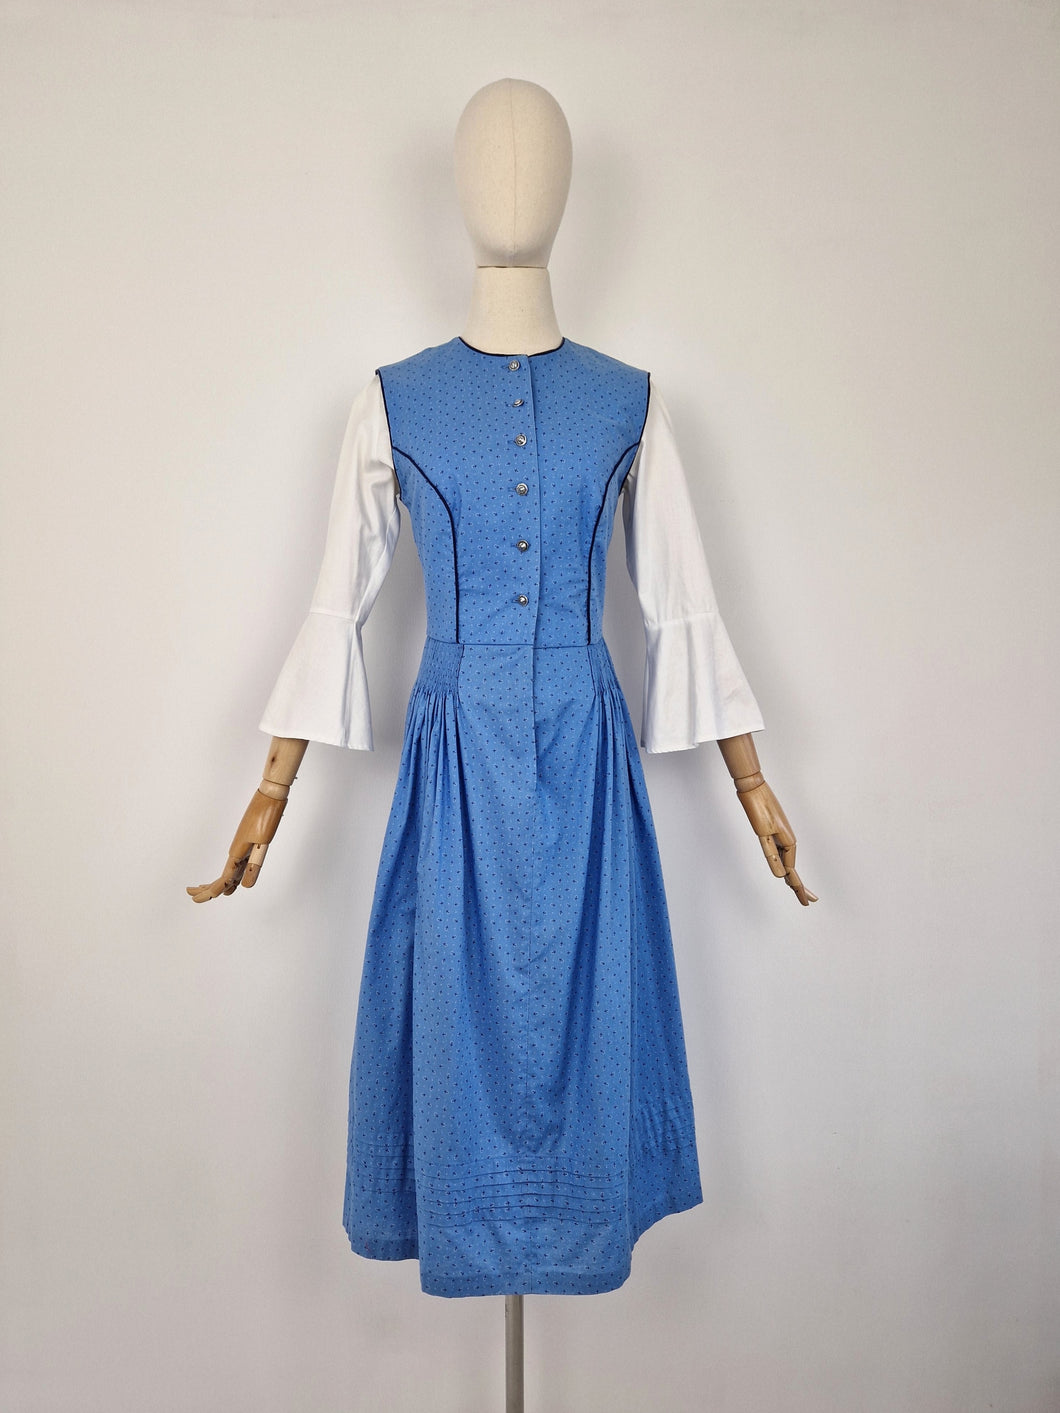 Vintage blue dirndl dress